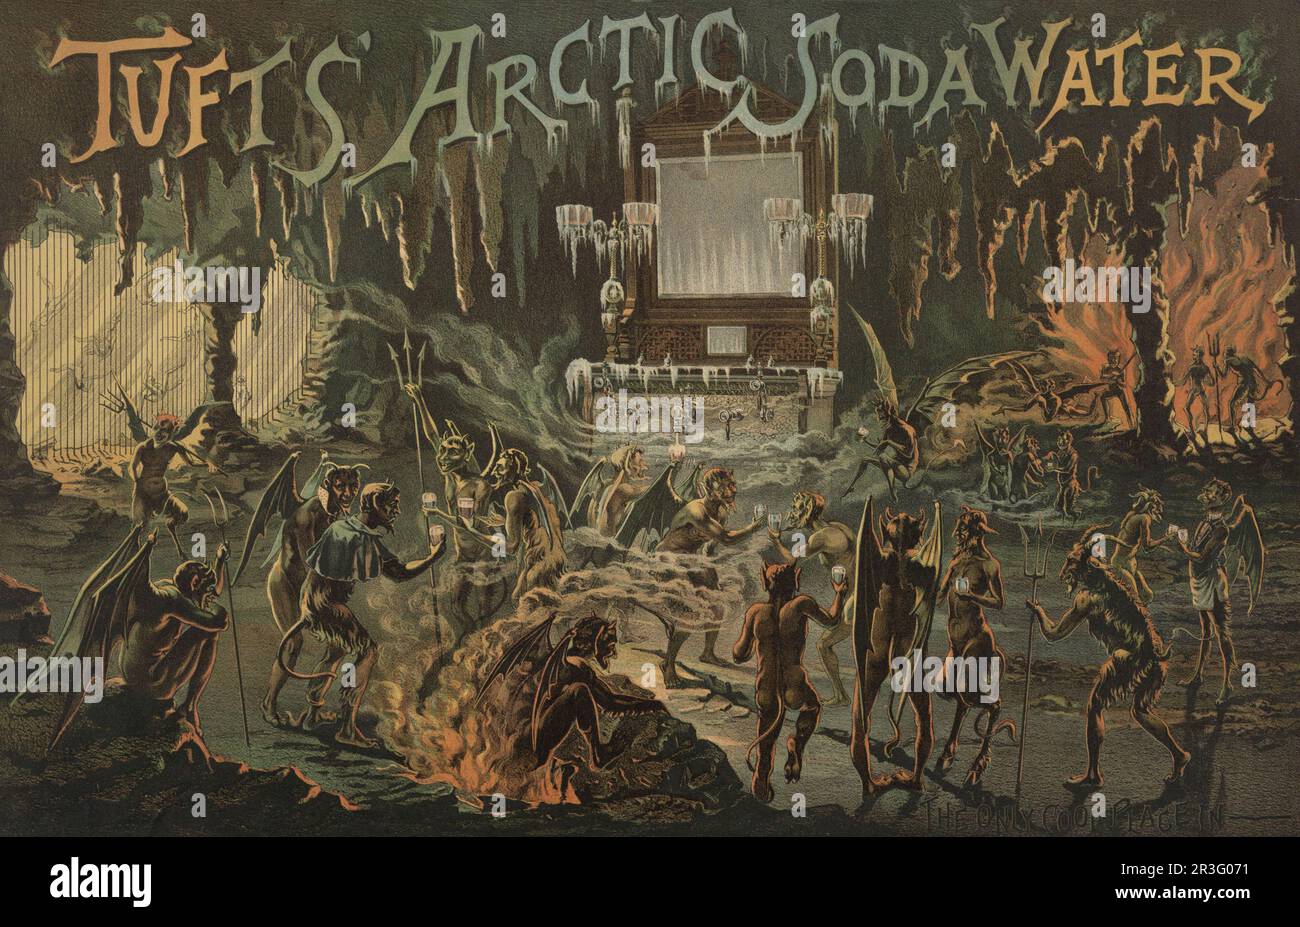 Publicité vintage pour Tuftss' Arctic Soda Water. Les démons et les démons dans un enfer ardent se rassemblent autour d'une grande barre. Banque D'Images